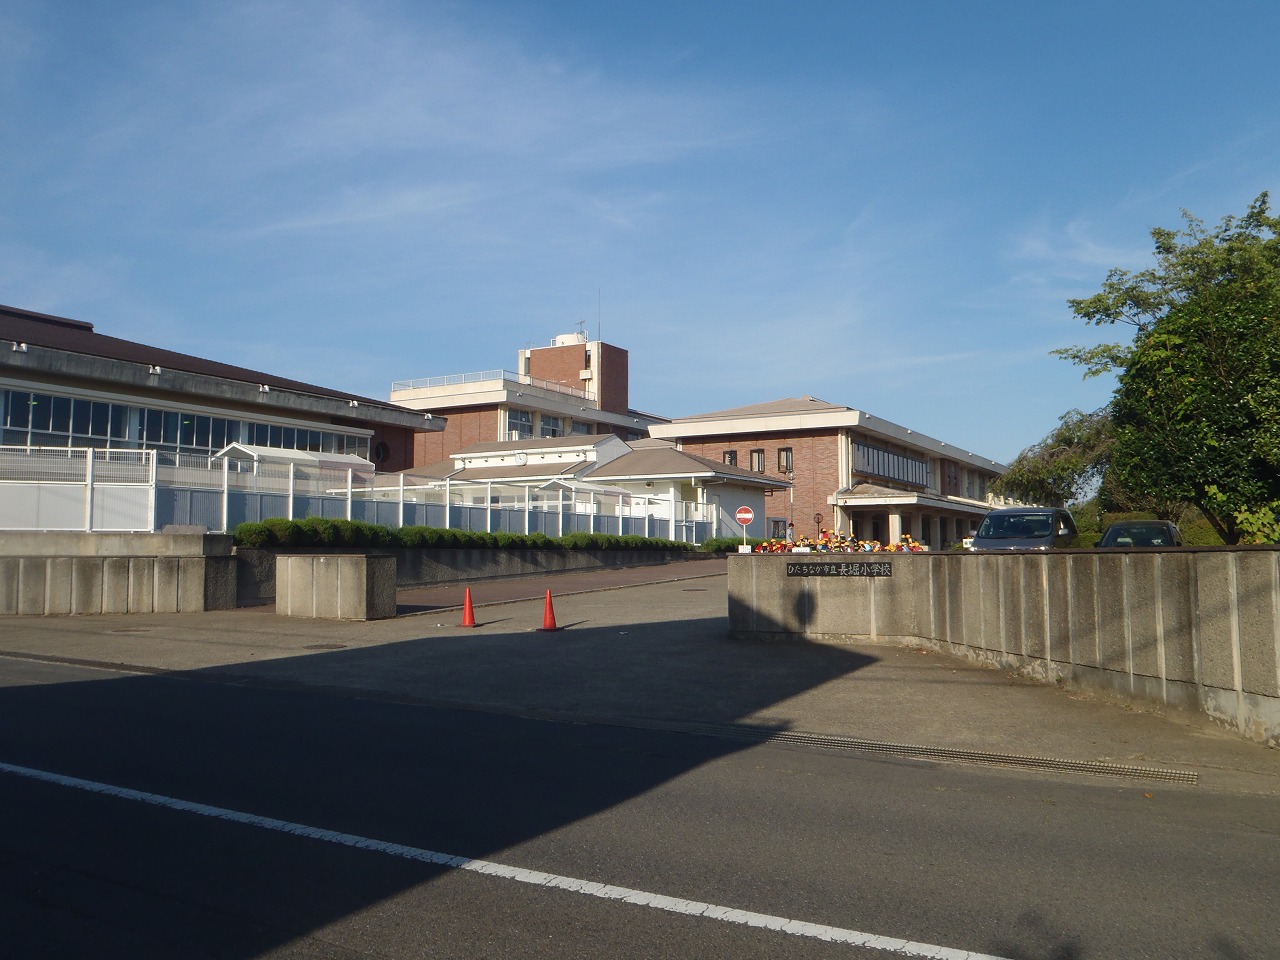 Primary school. 940m to Hitachinaka Municipal Nagahori elementary school (elementary school)